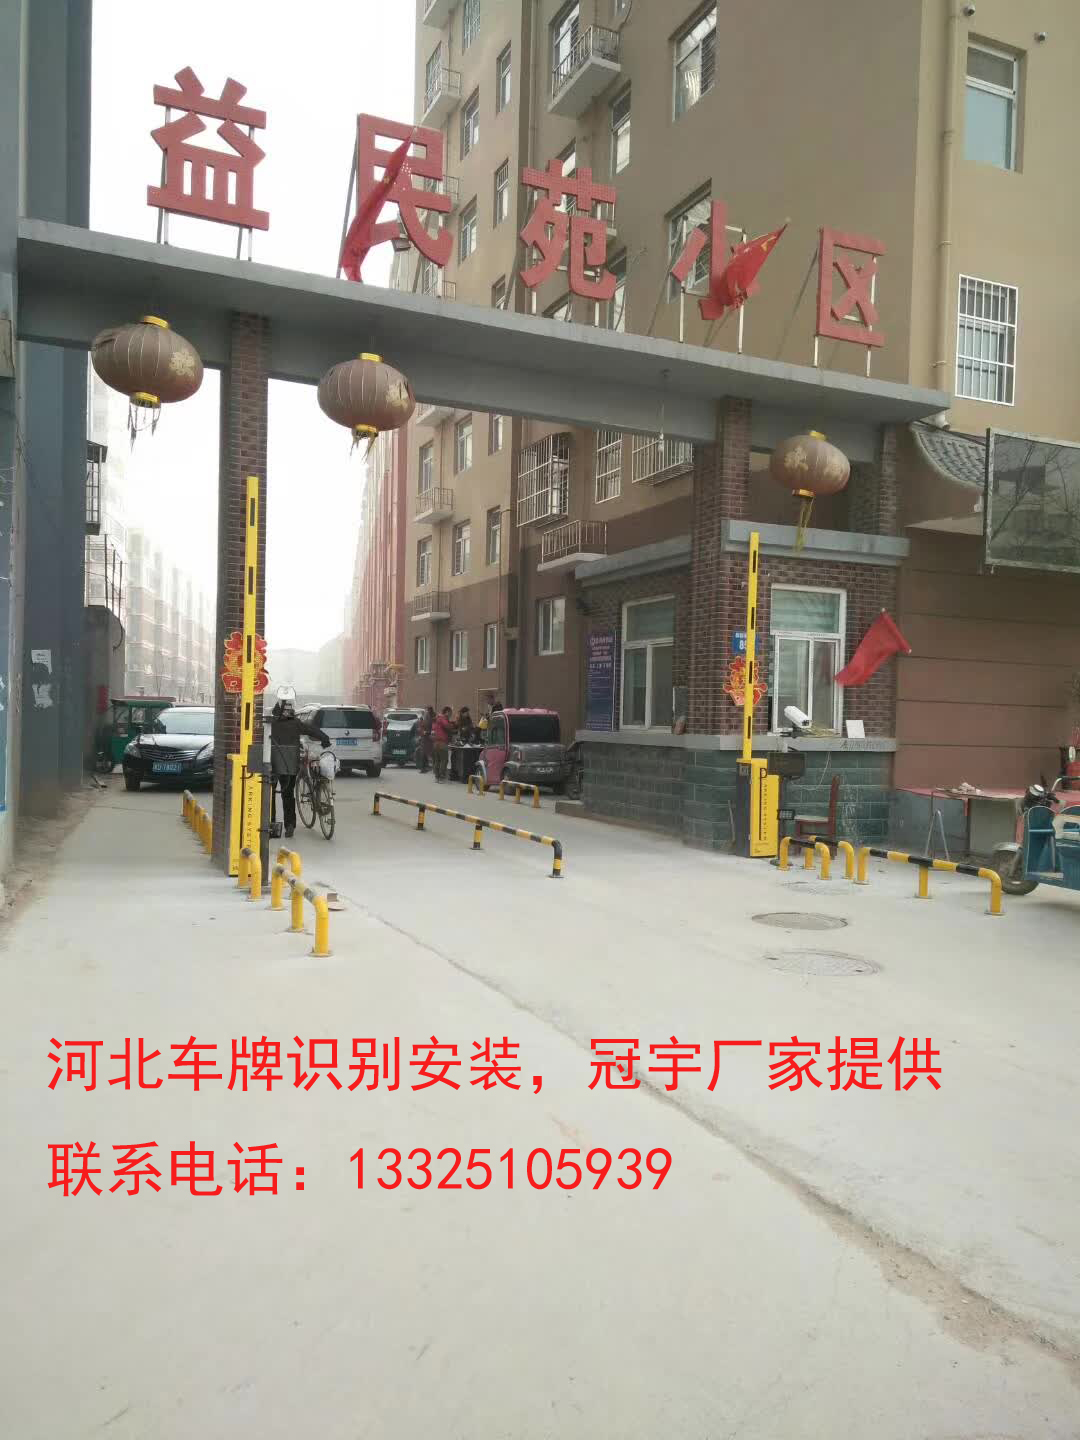 齐河邯郸哪有卖道闸车牌识别？